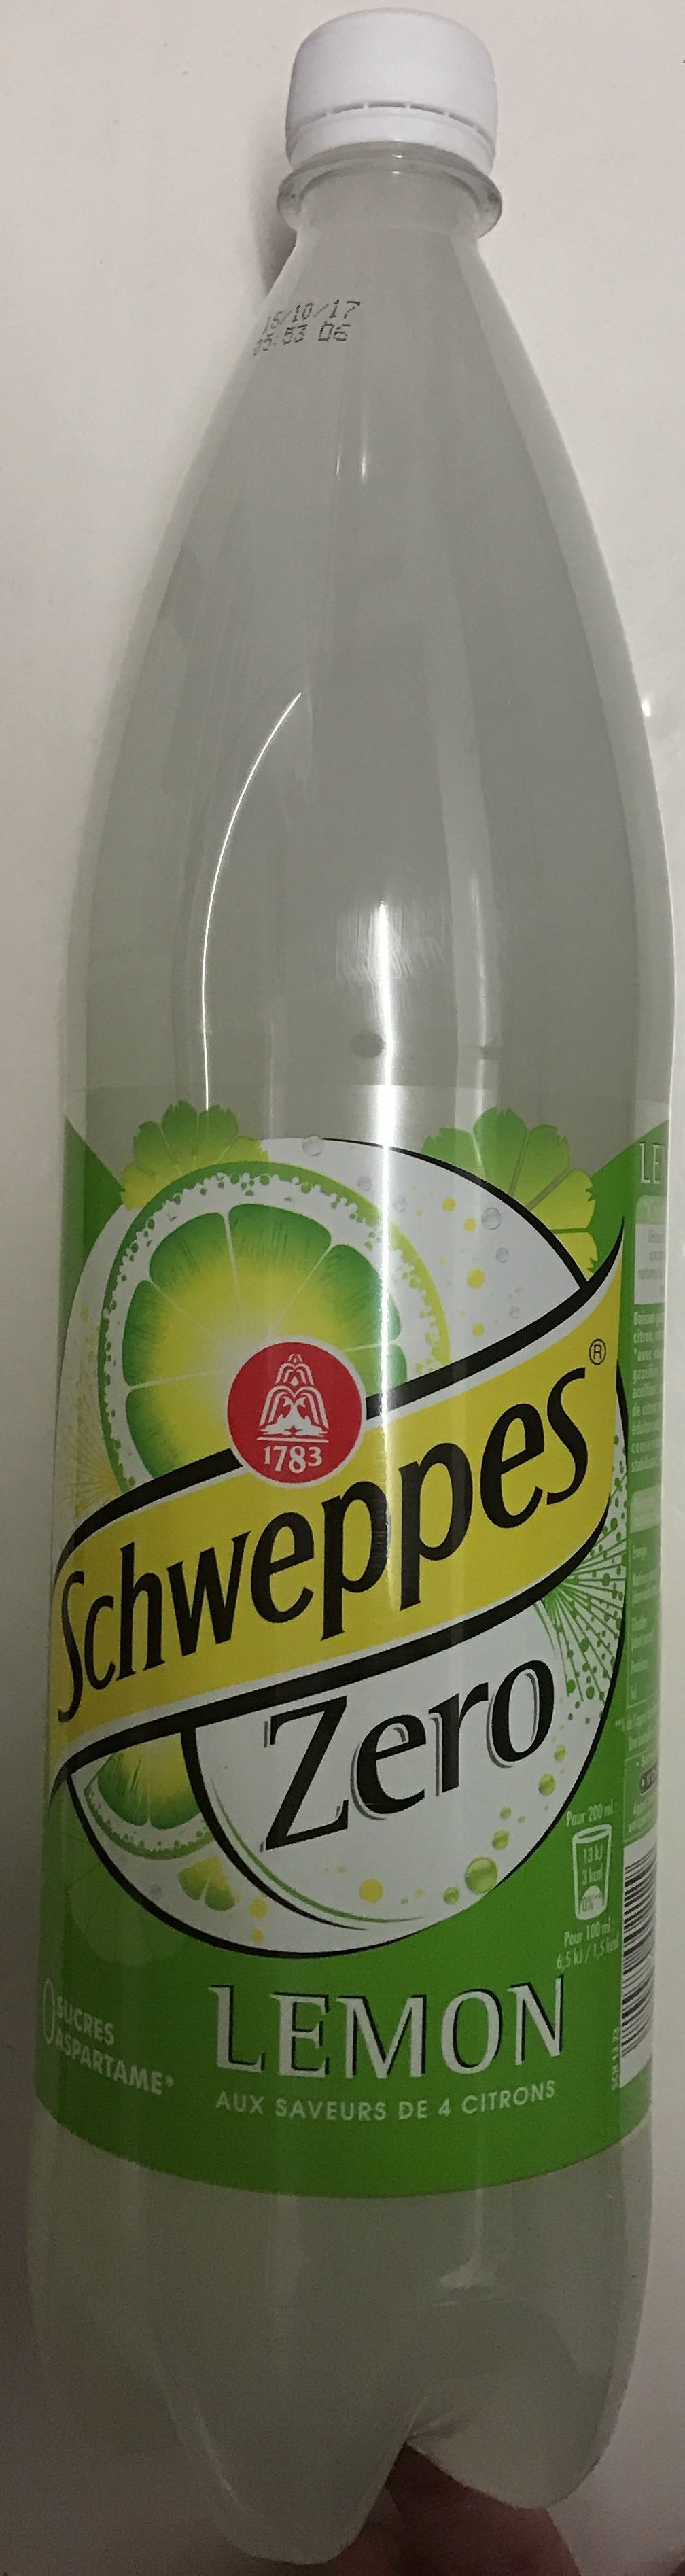 Schweppes Zero Lemon - Product - fr